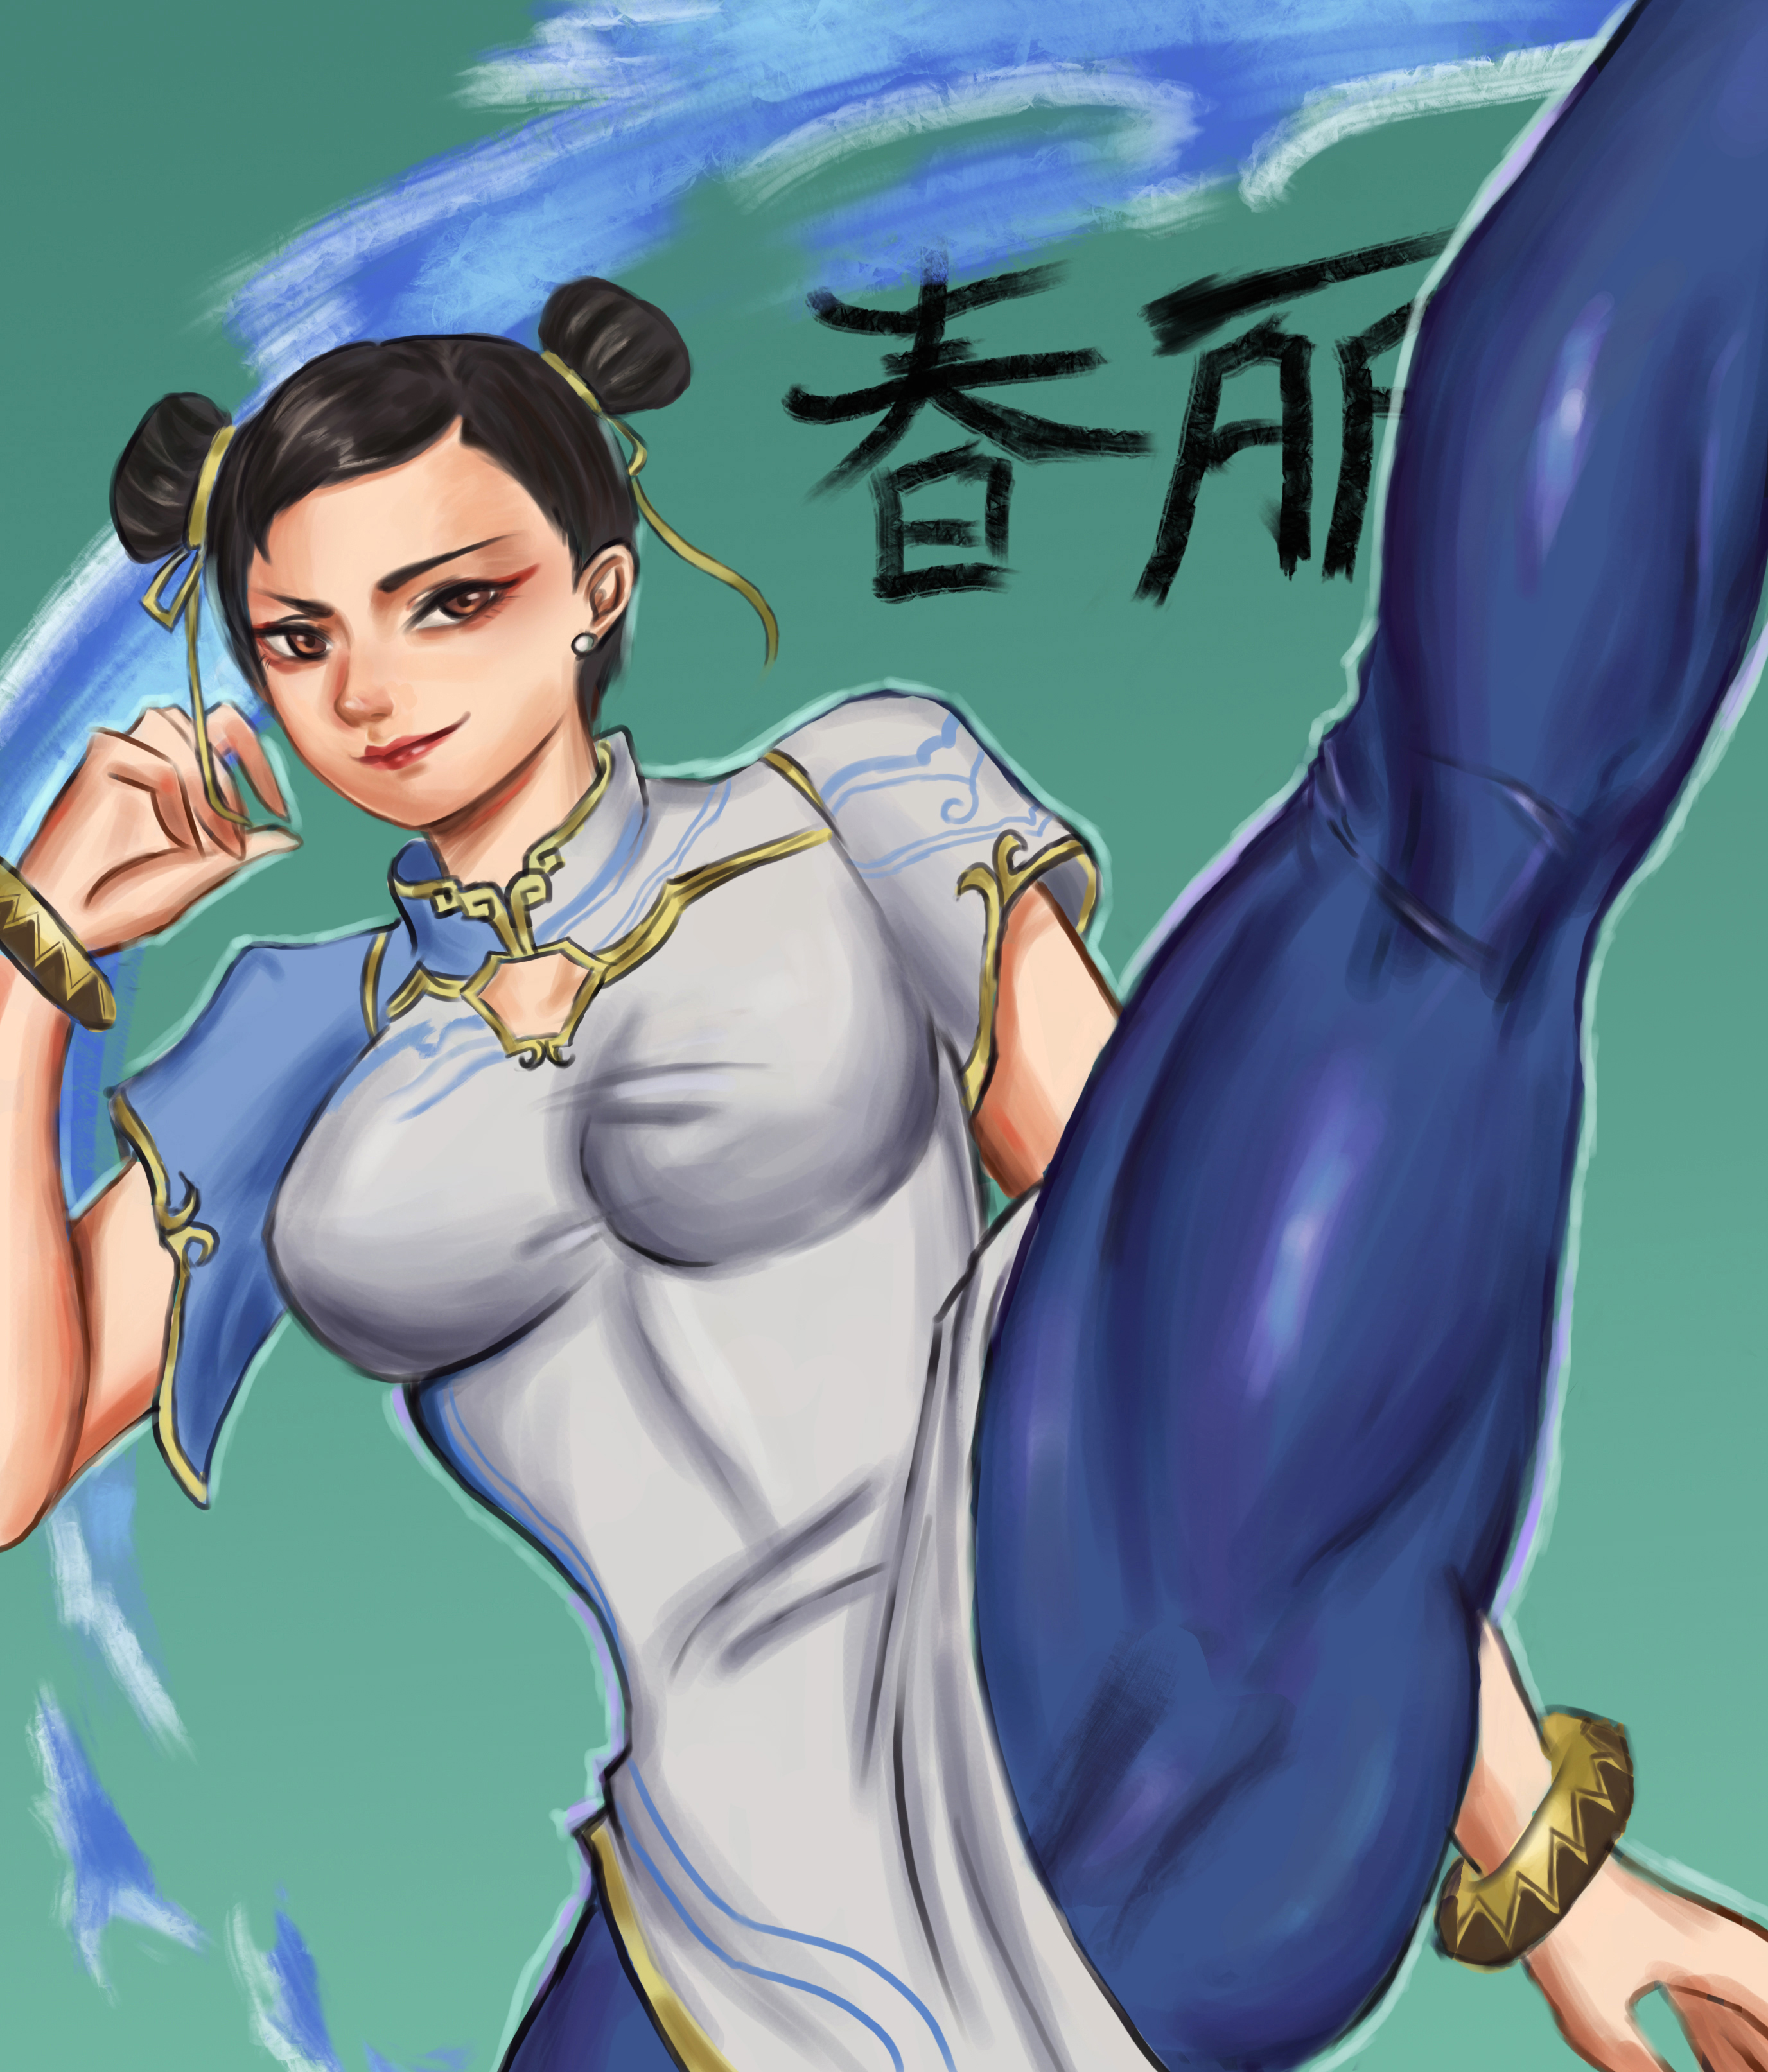 Anime Anime Girls Street Fighter Street Fighter Vi Chun Li Hairbun Brunette Solo Artwork Digital Art 2753x3227